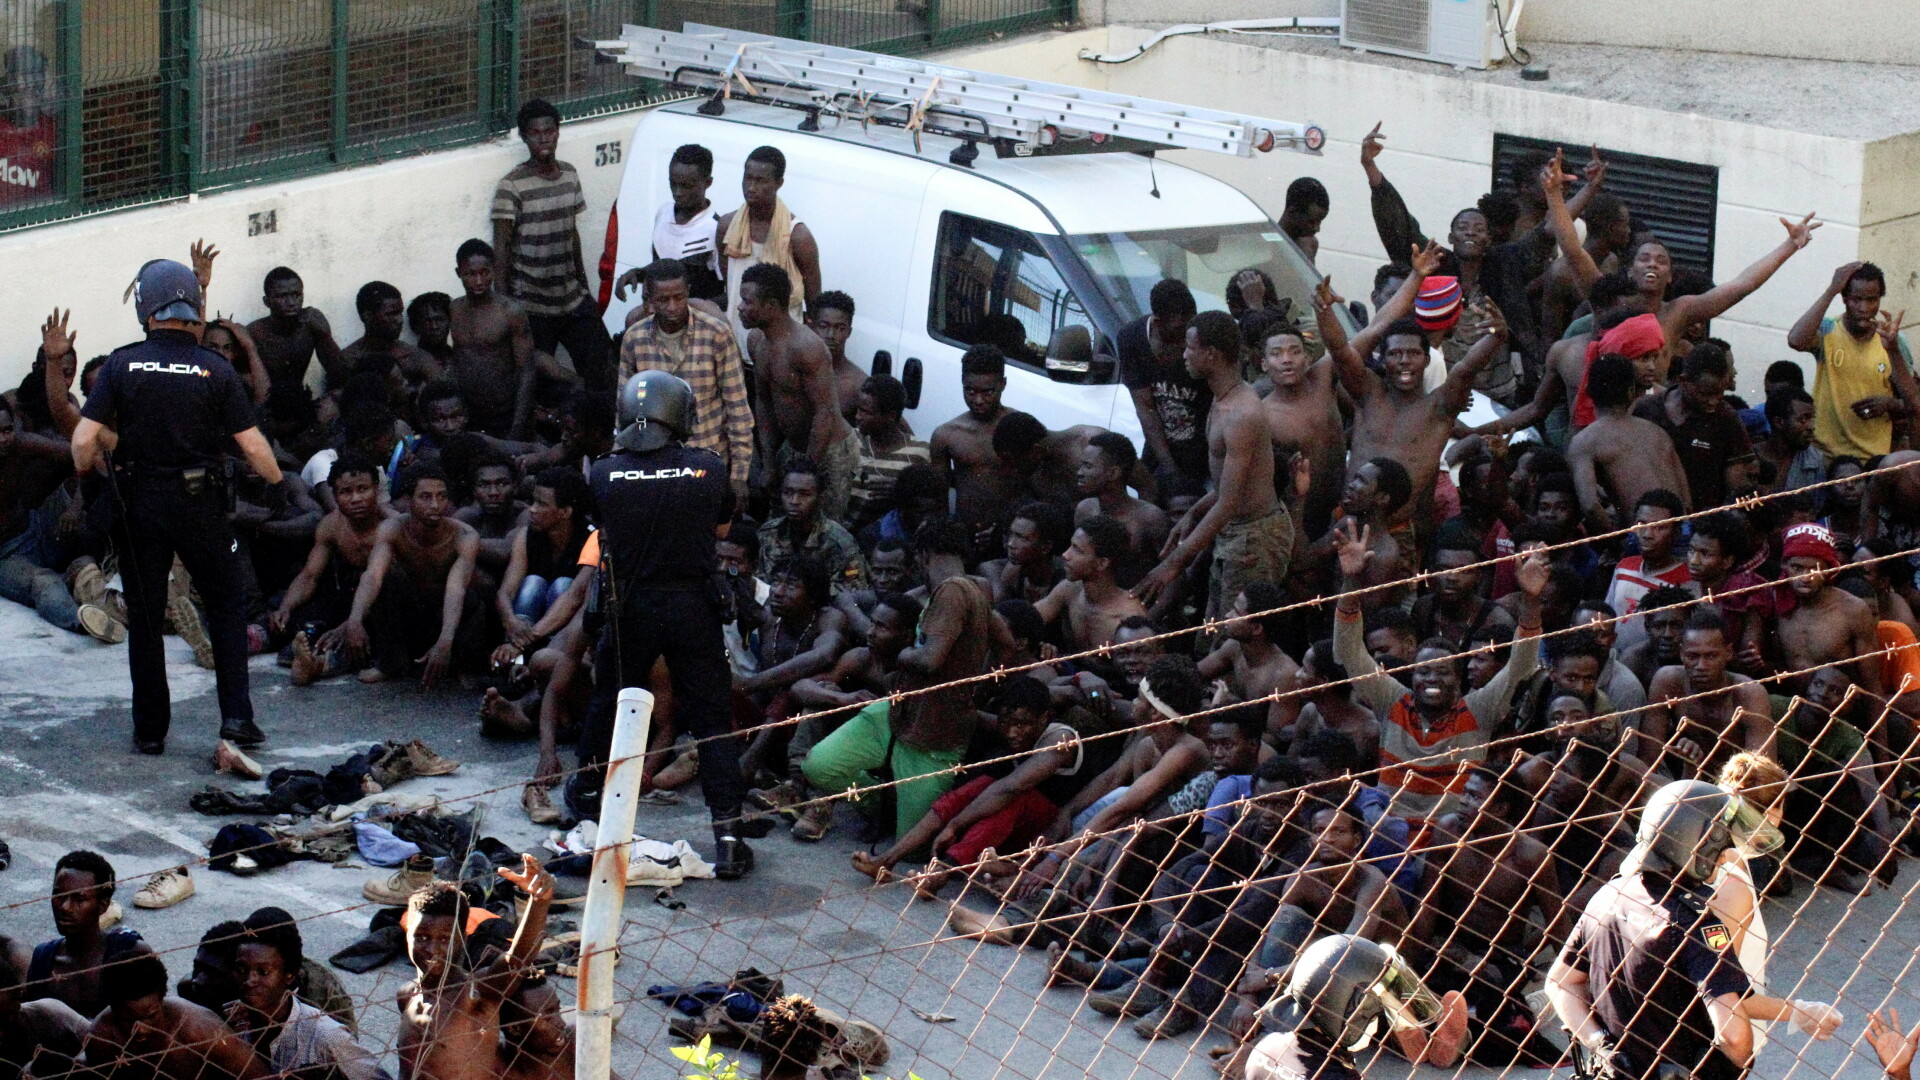 600 de migranți au încercat să intre cu forța în enclava spaniolă Ceuta